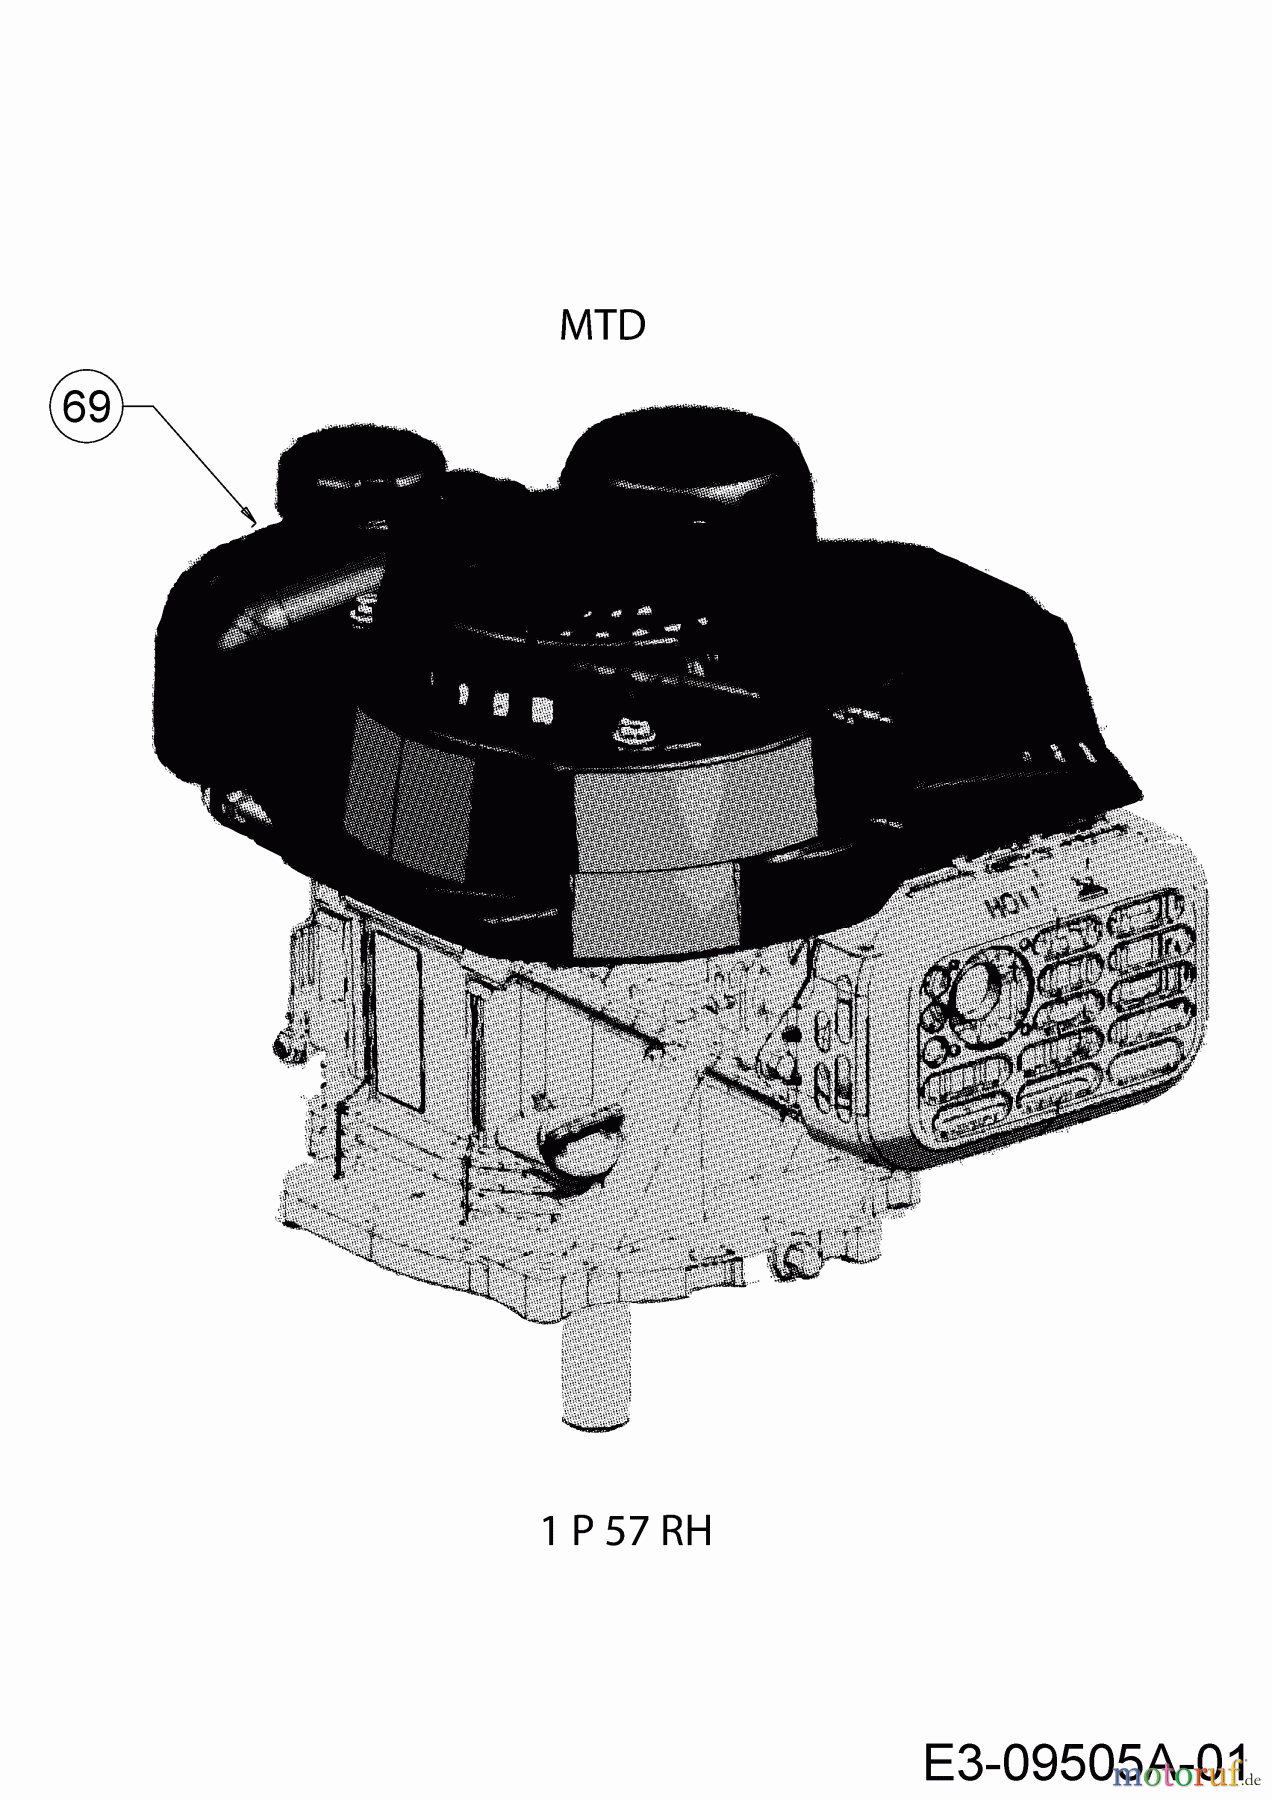  Cub Cadet Motormäher mit Antrieb LM 1 AR 46 12A-TQSJ603  (2017) Motor MTD